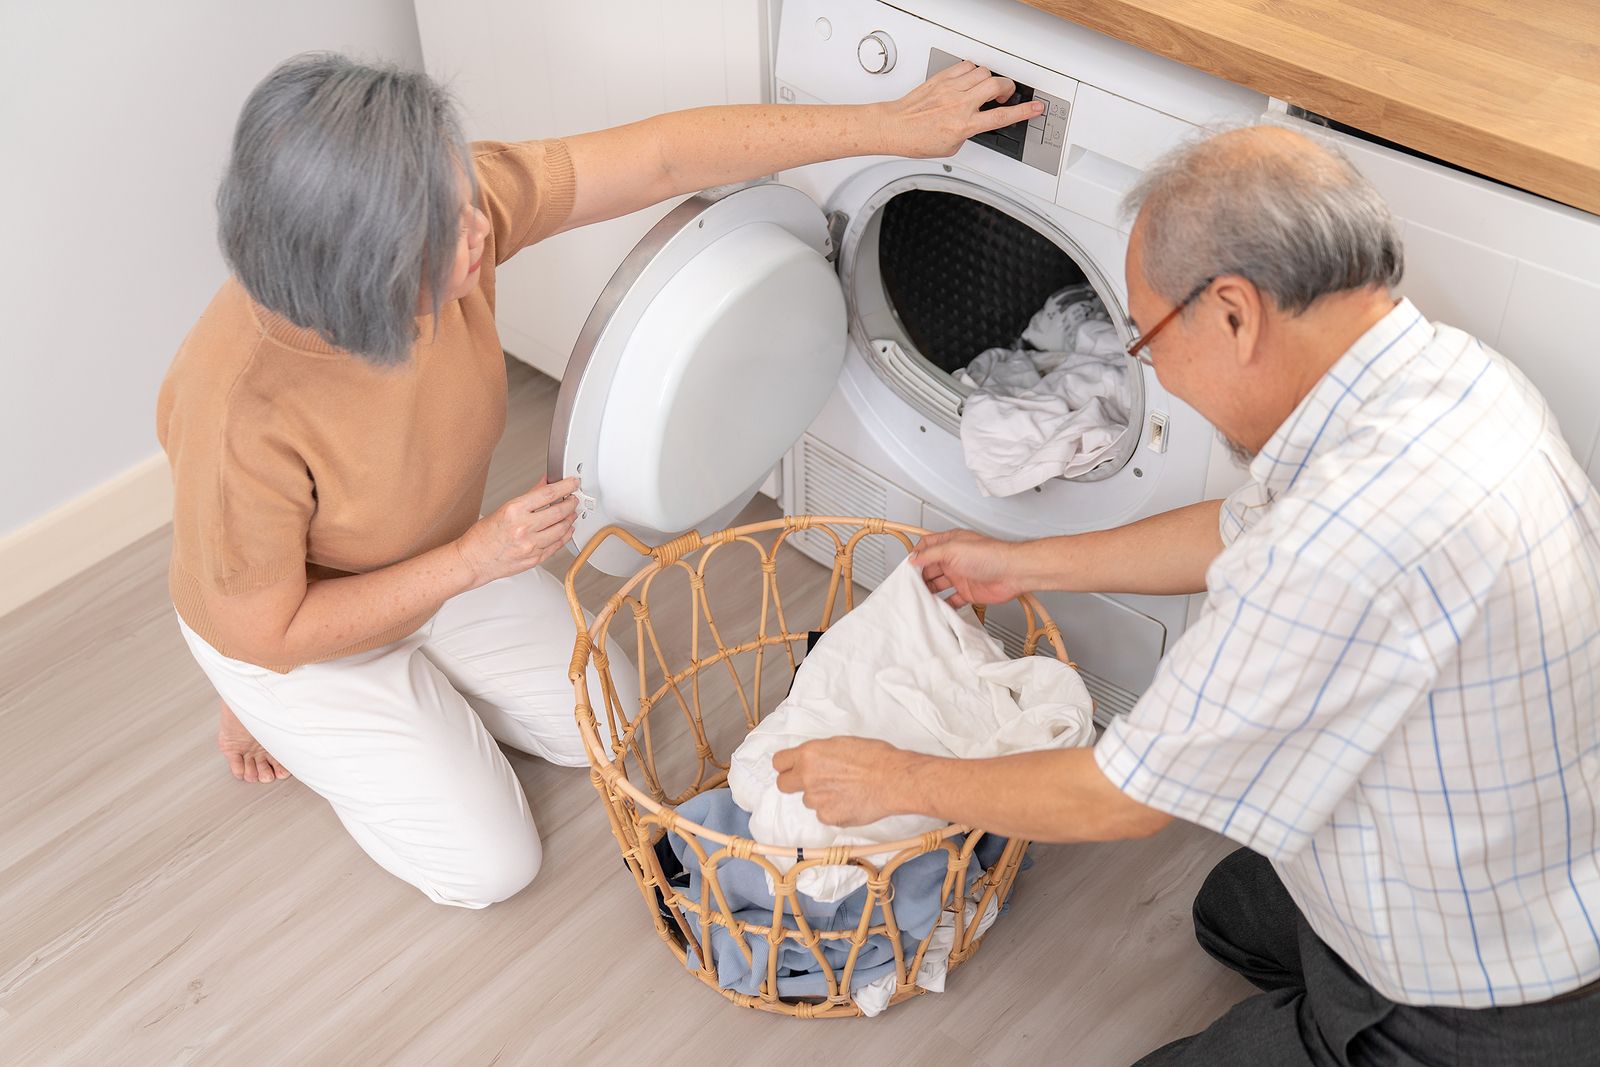 ¿La lavadora hace ruido y vibra demasiado? Posibles razones y soluciones. Foto: Bigstock